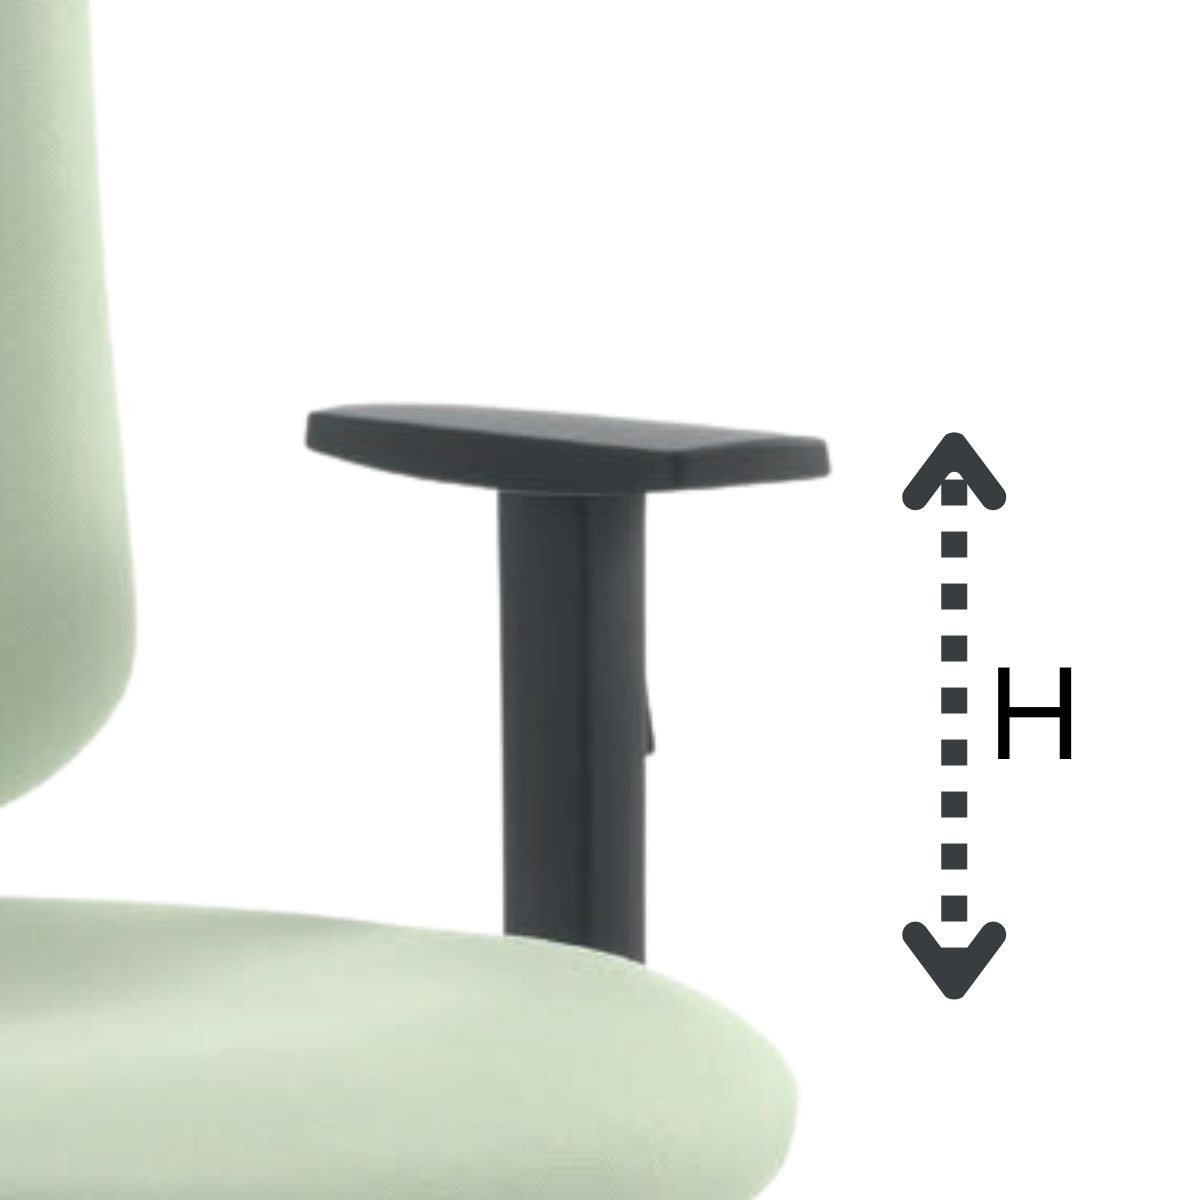  Height adjustable armrests